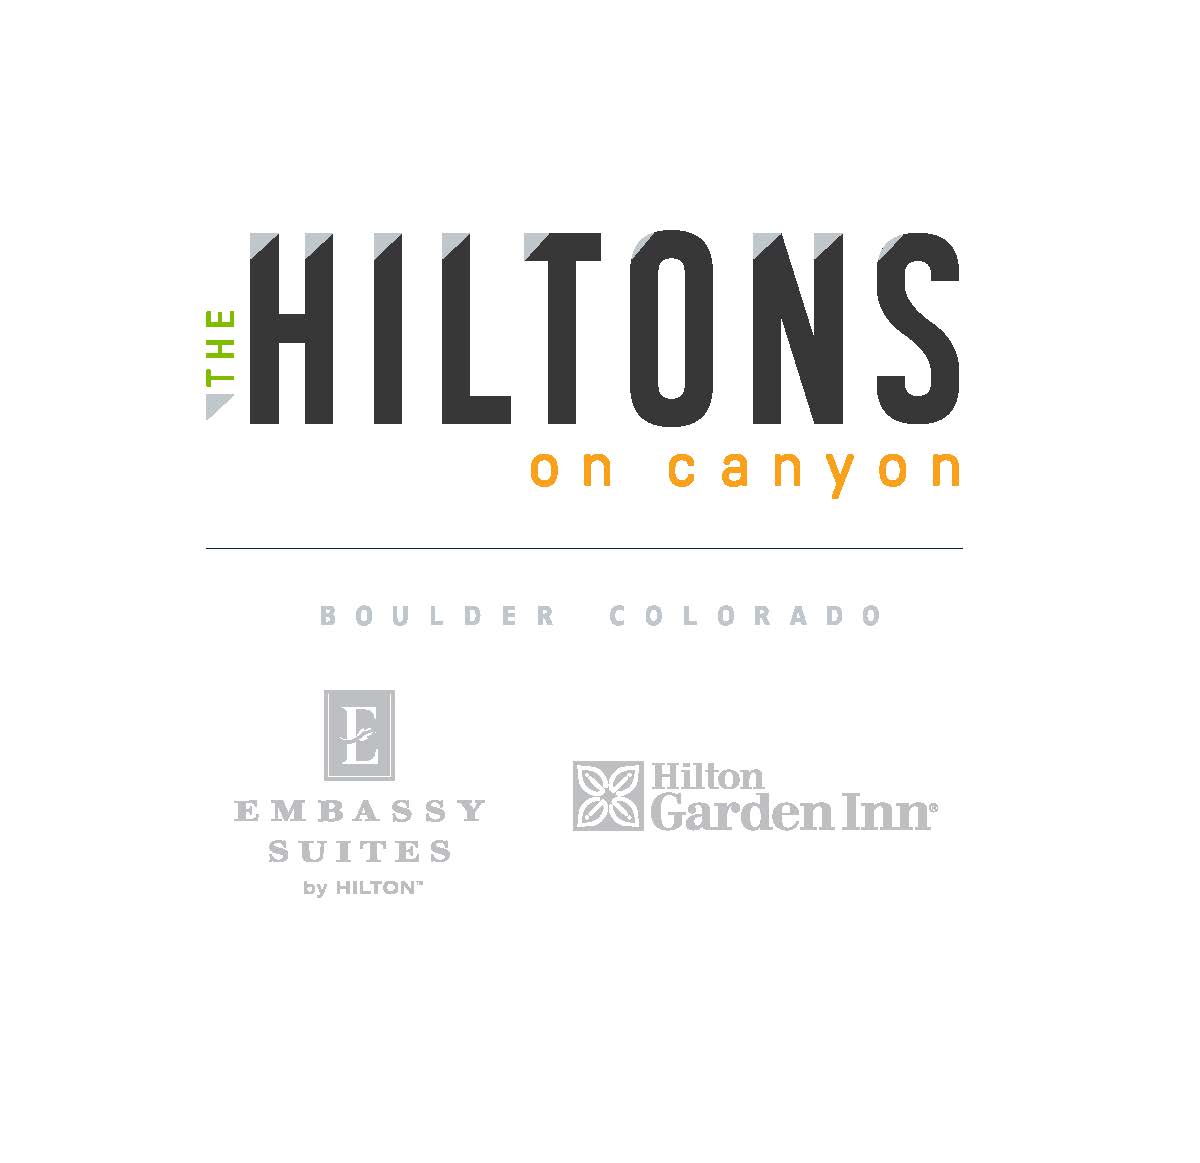 Hiltons On Canyon